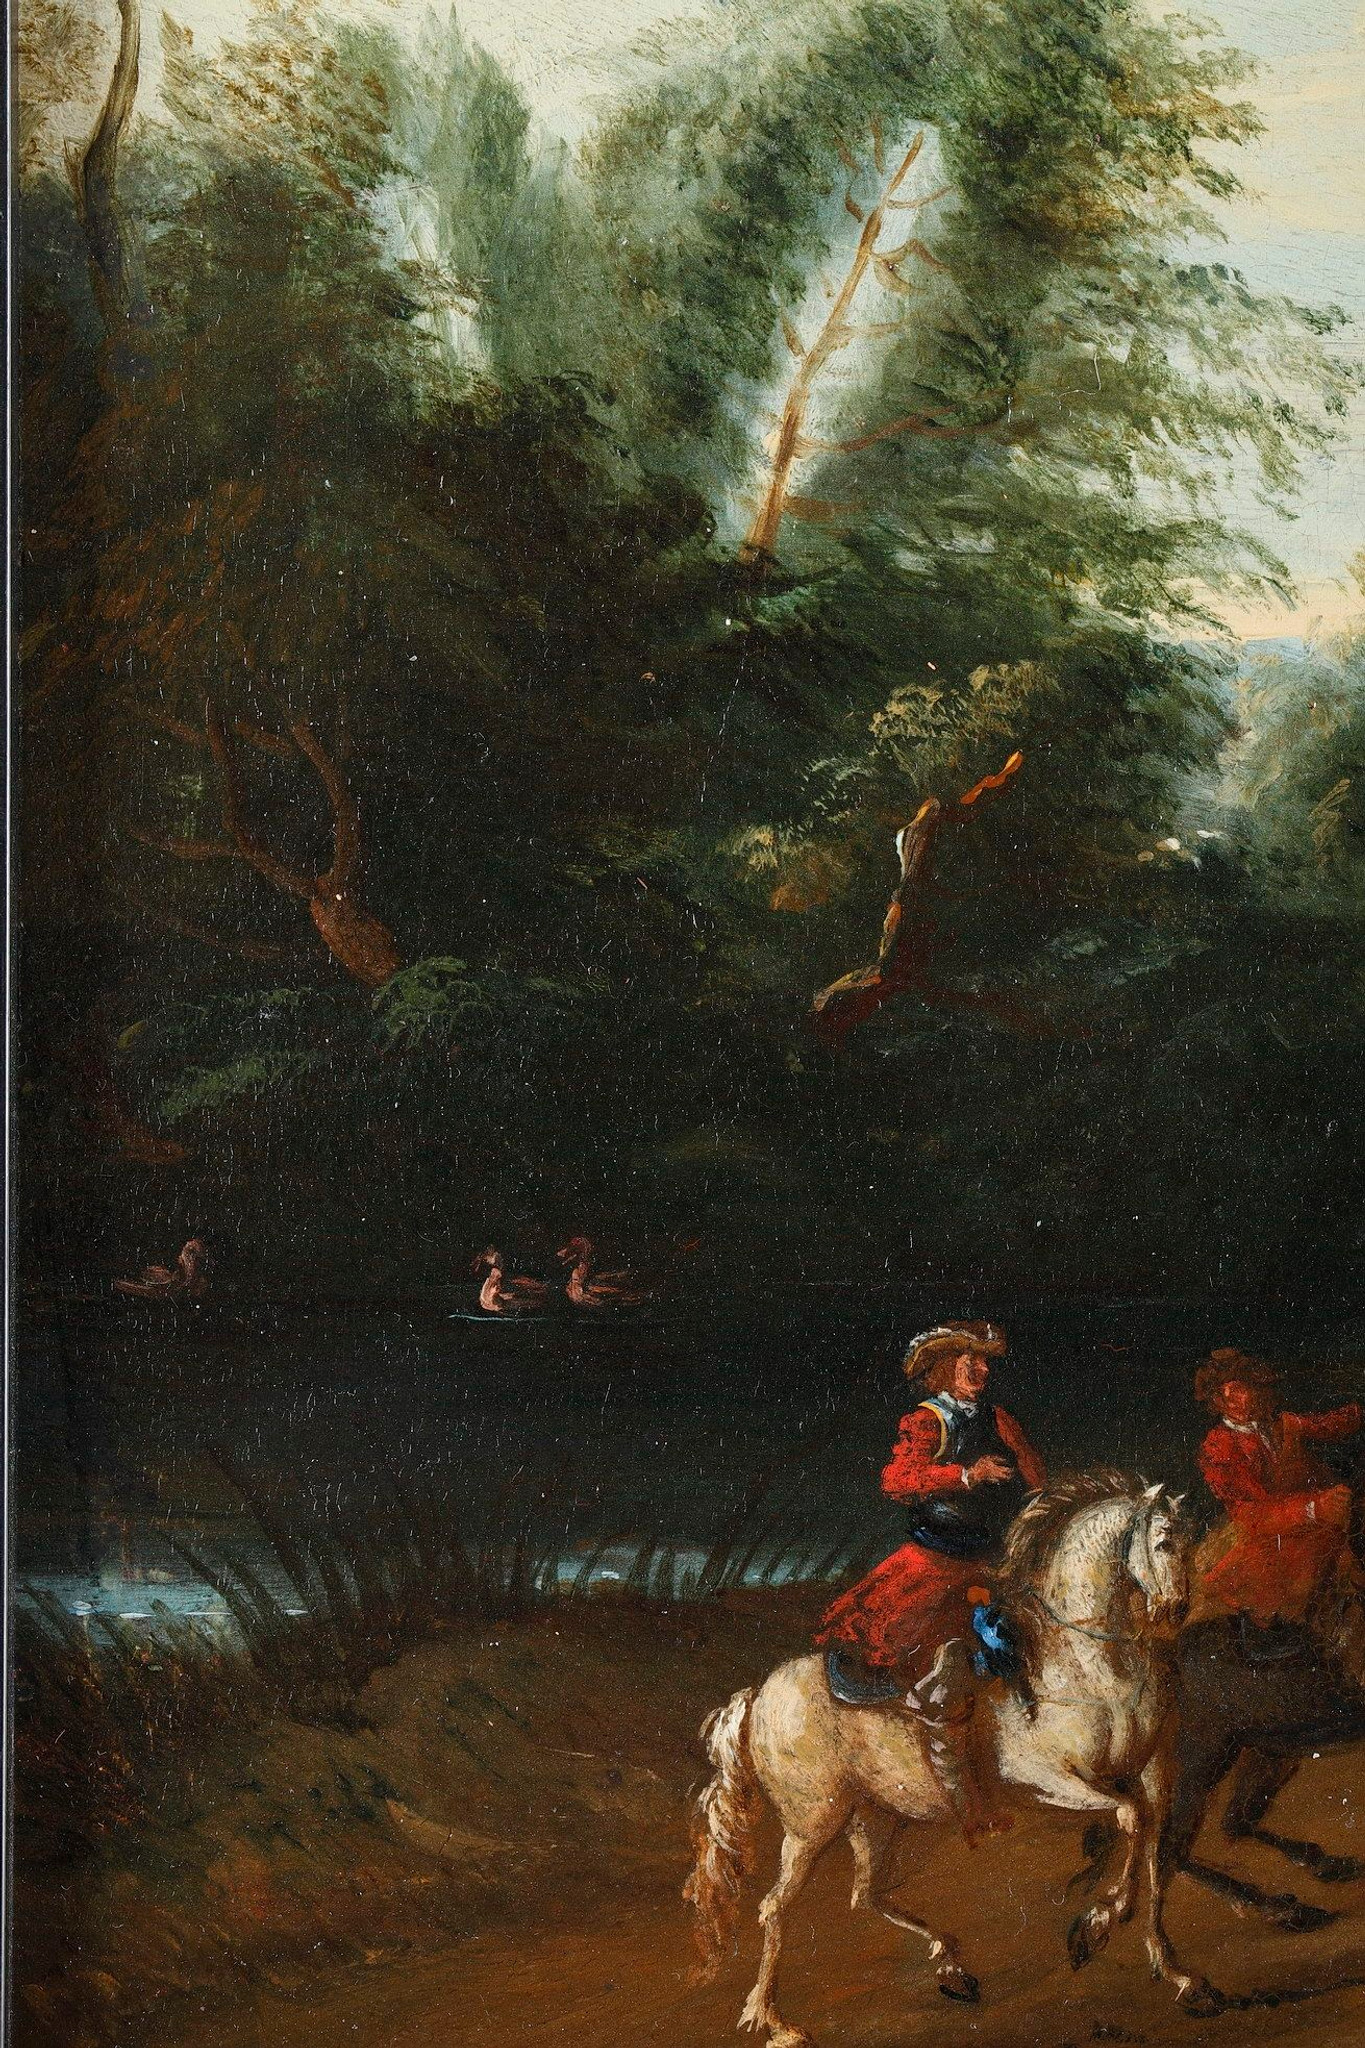 Paysage en huile, 18e siècle